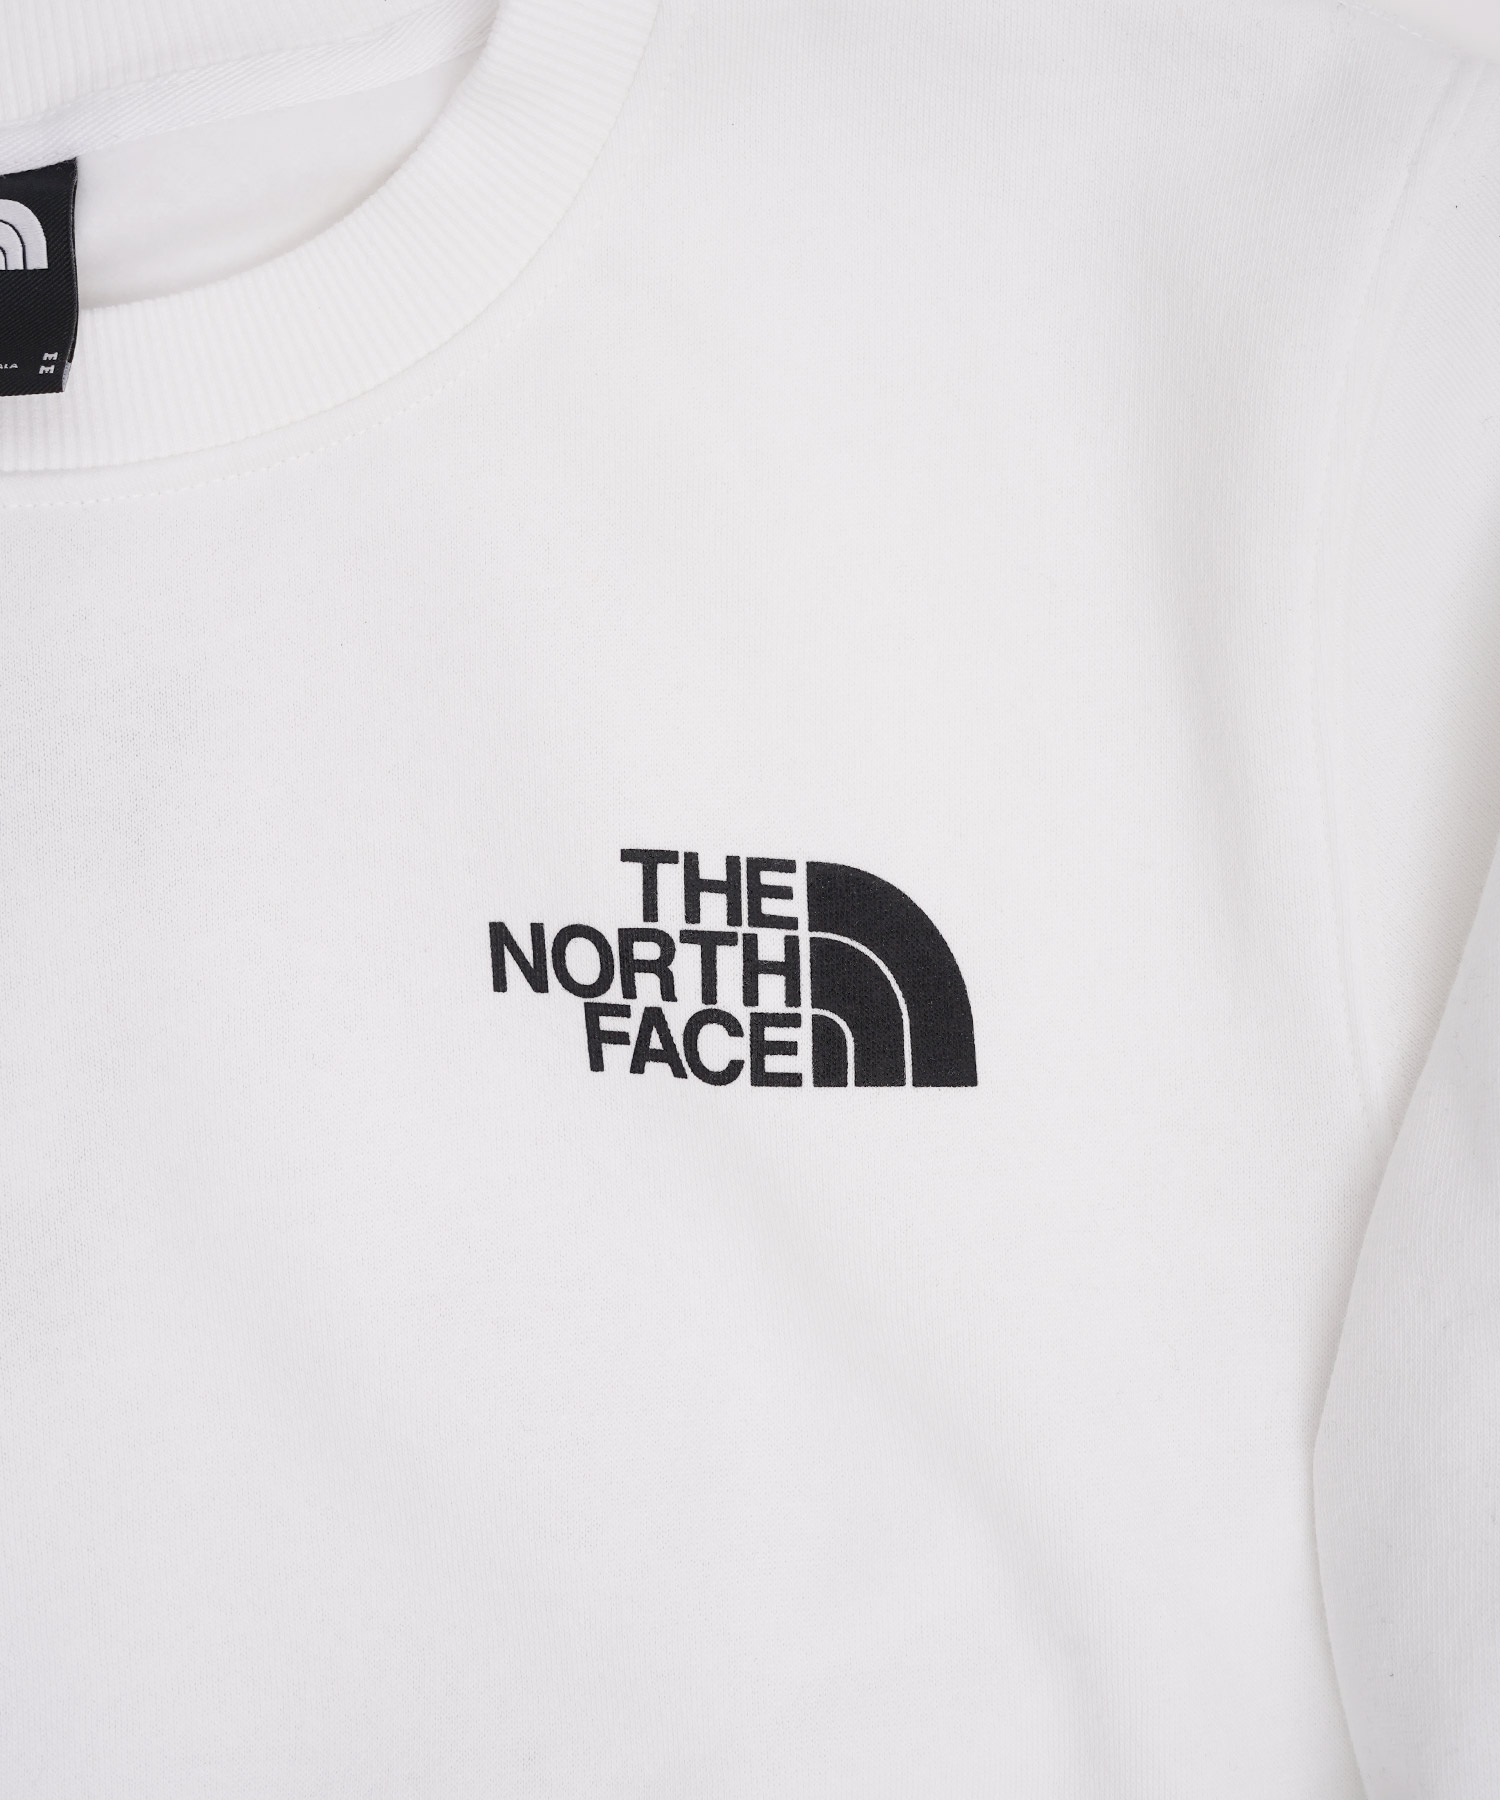 THE NORTH FACE(ザ・ノース・フェイス)ボックスロゴスウェット 